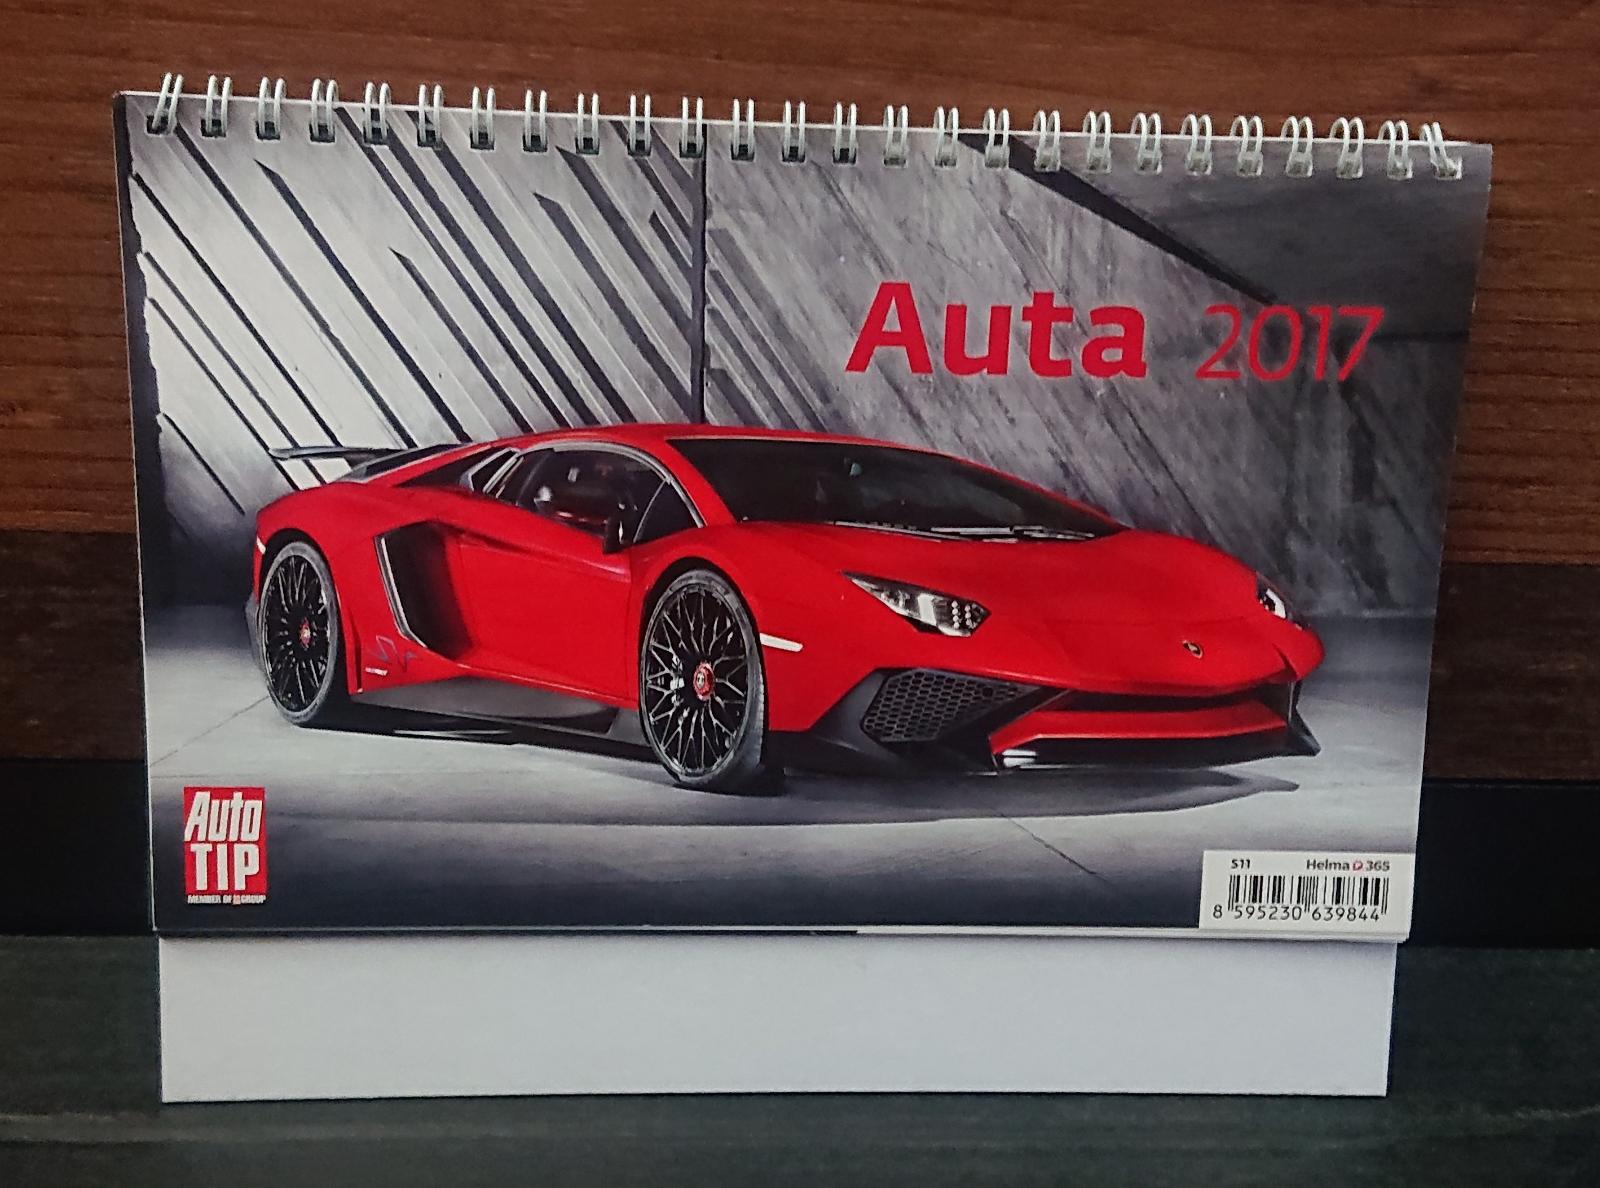 Kalendár Auto Tip Autá 2017 - Motoristická literatúra